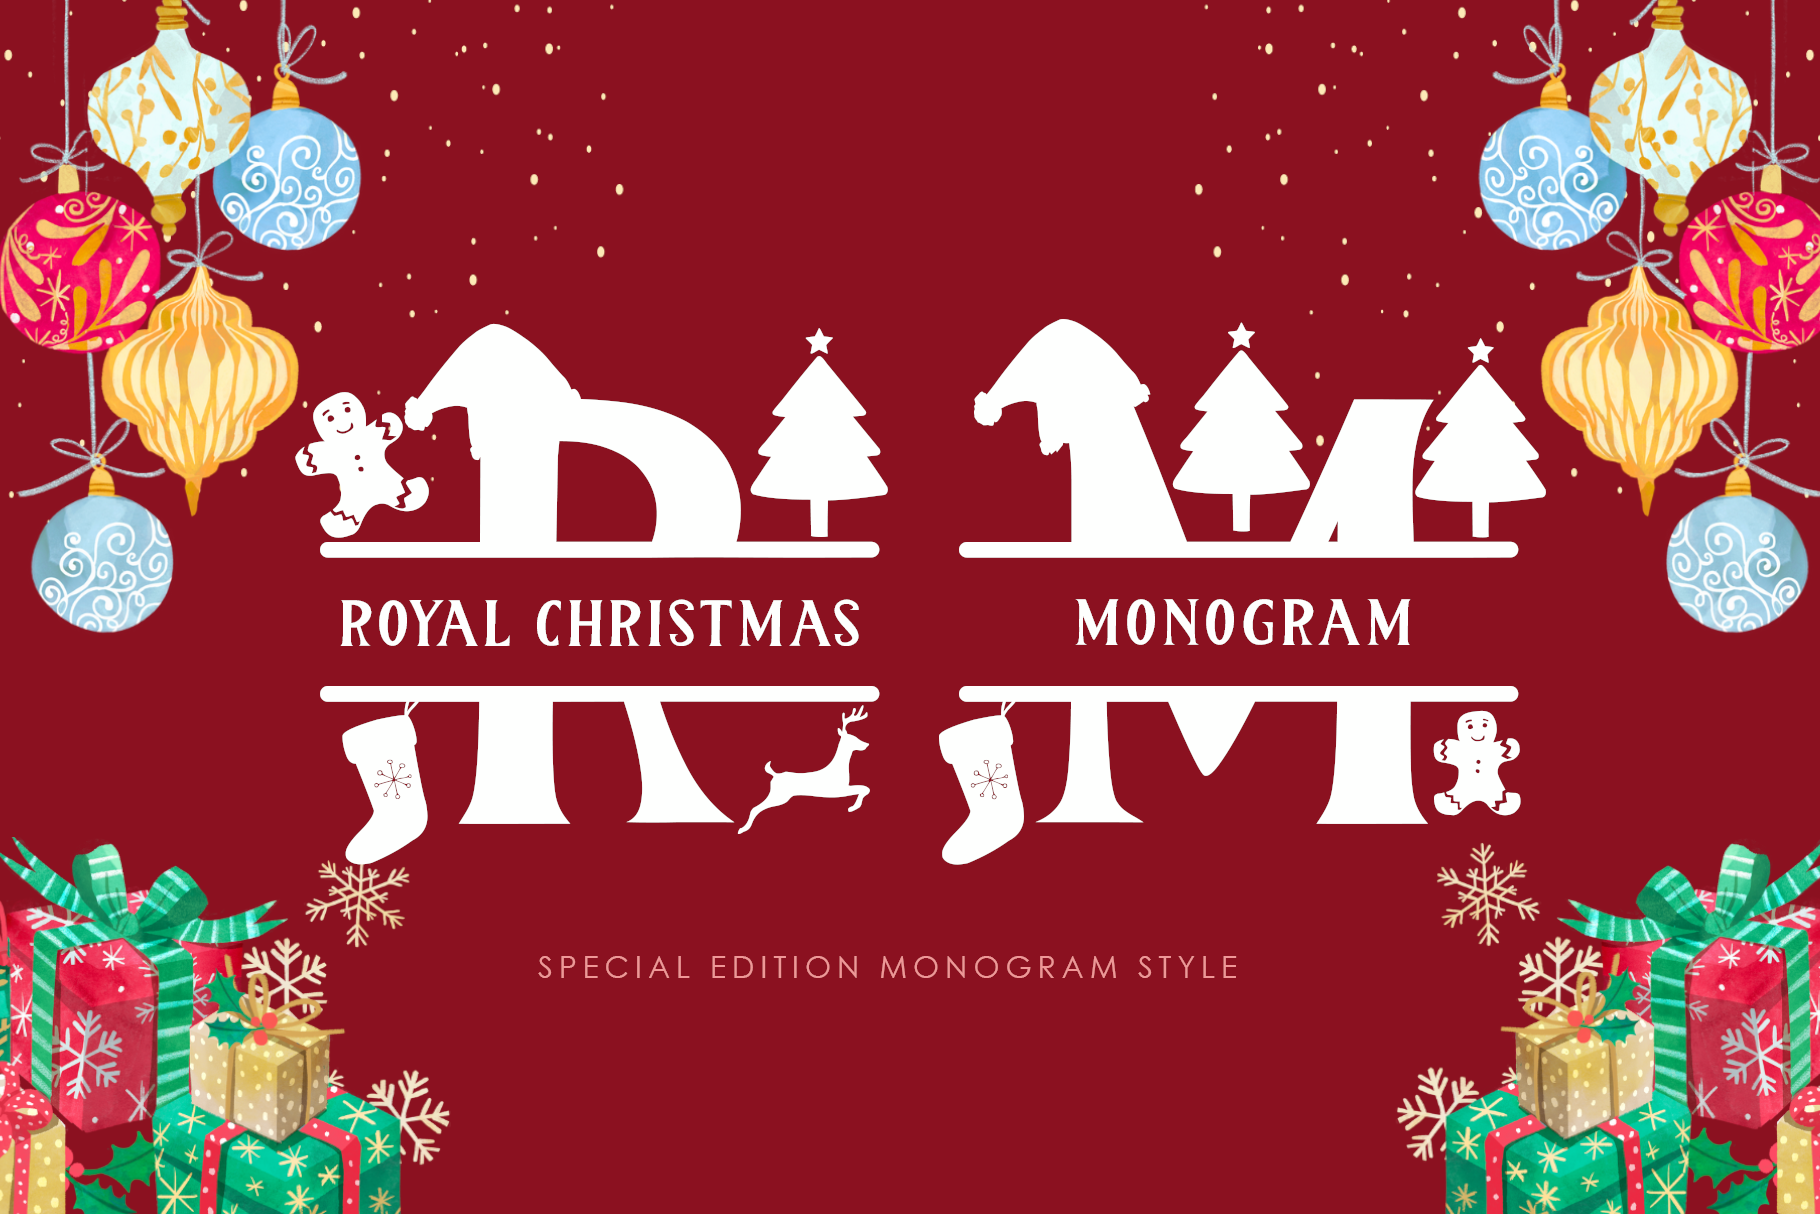 Royal Christmas Monogram